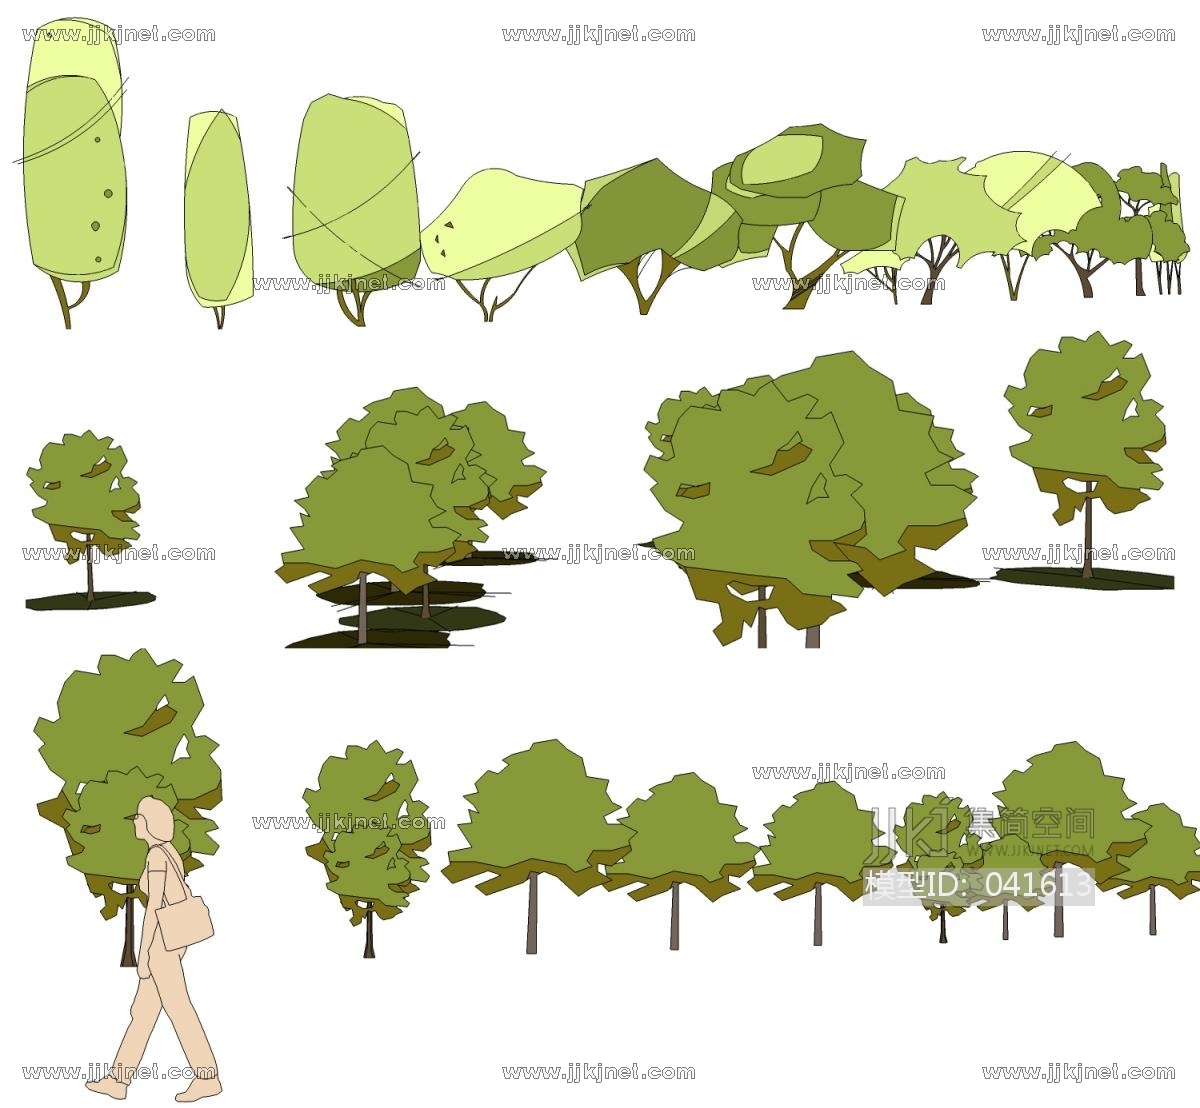 01-抽象手绘风格植物树 (1)